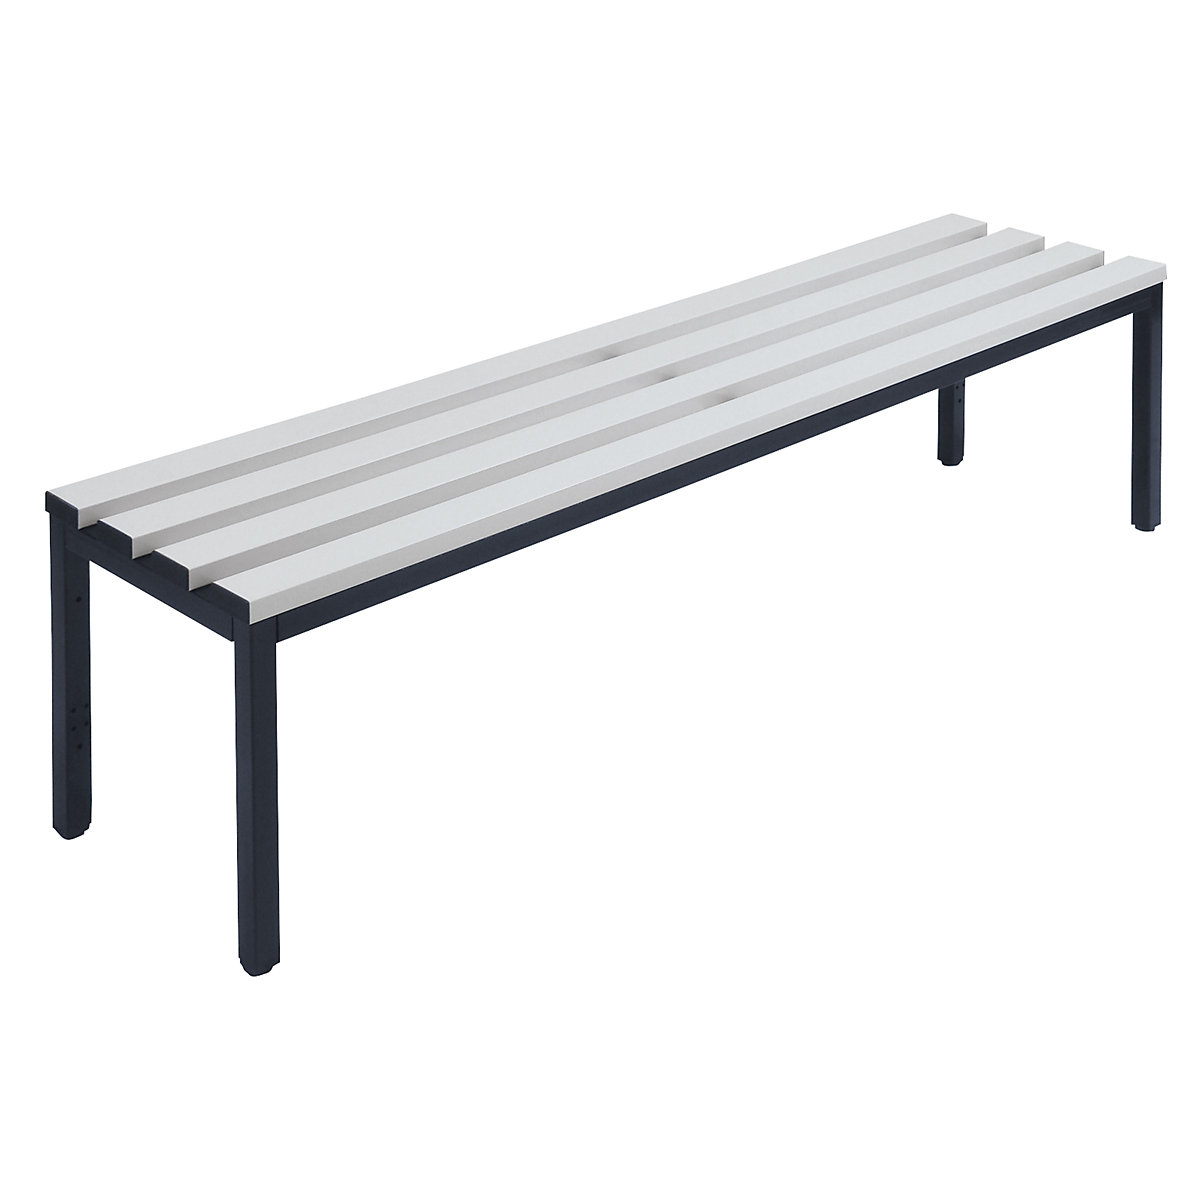 Šatnová lavice bez opěradla – Wolf, lišty z PVC, šedá, délka 1500 mm-3